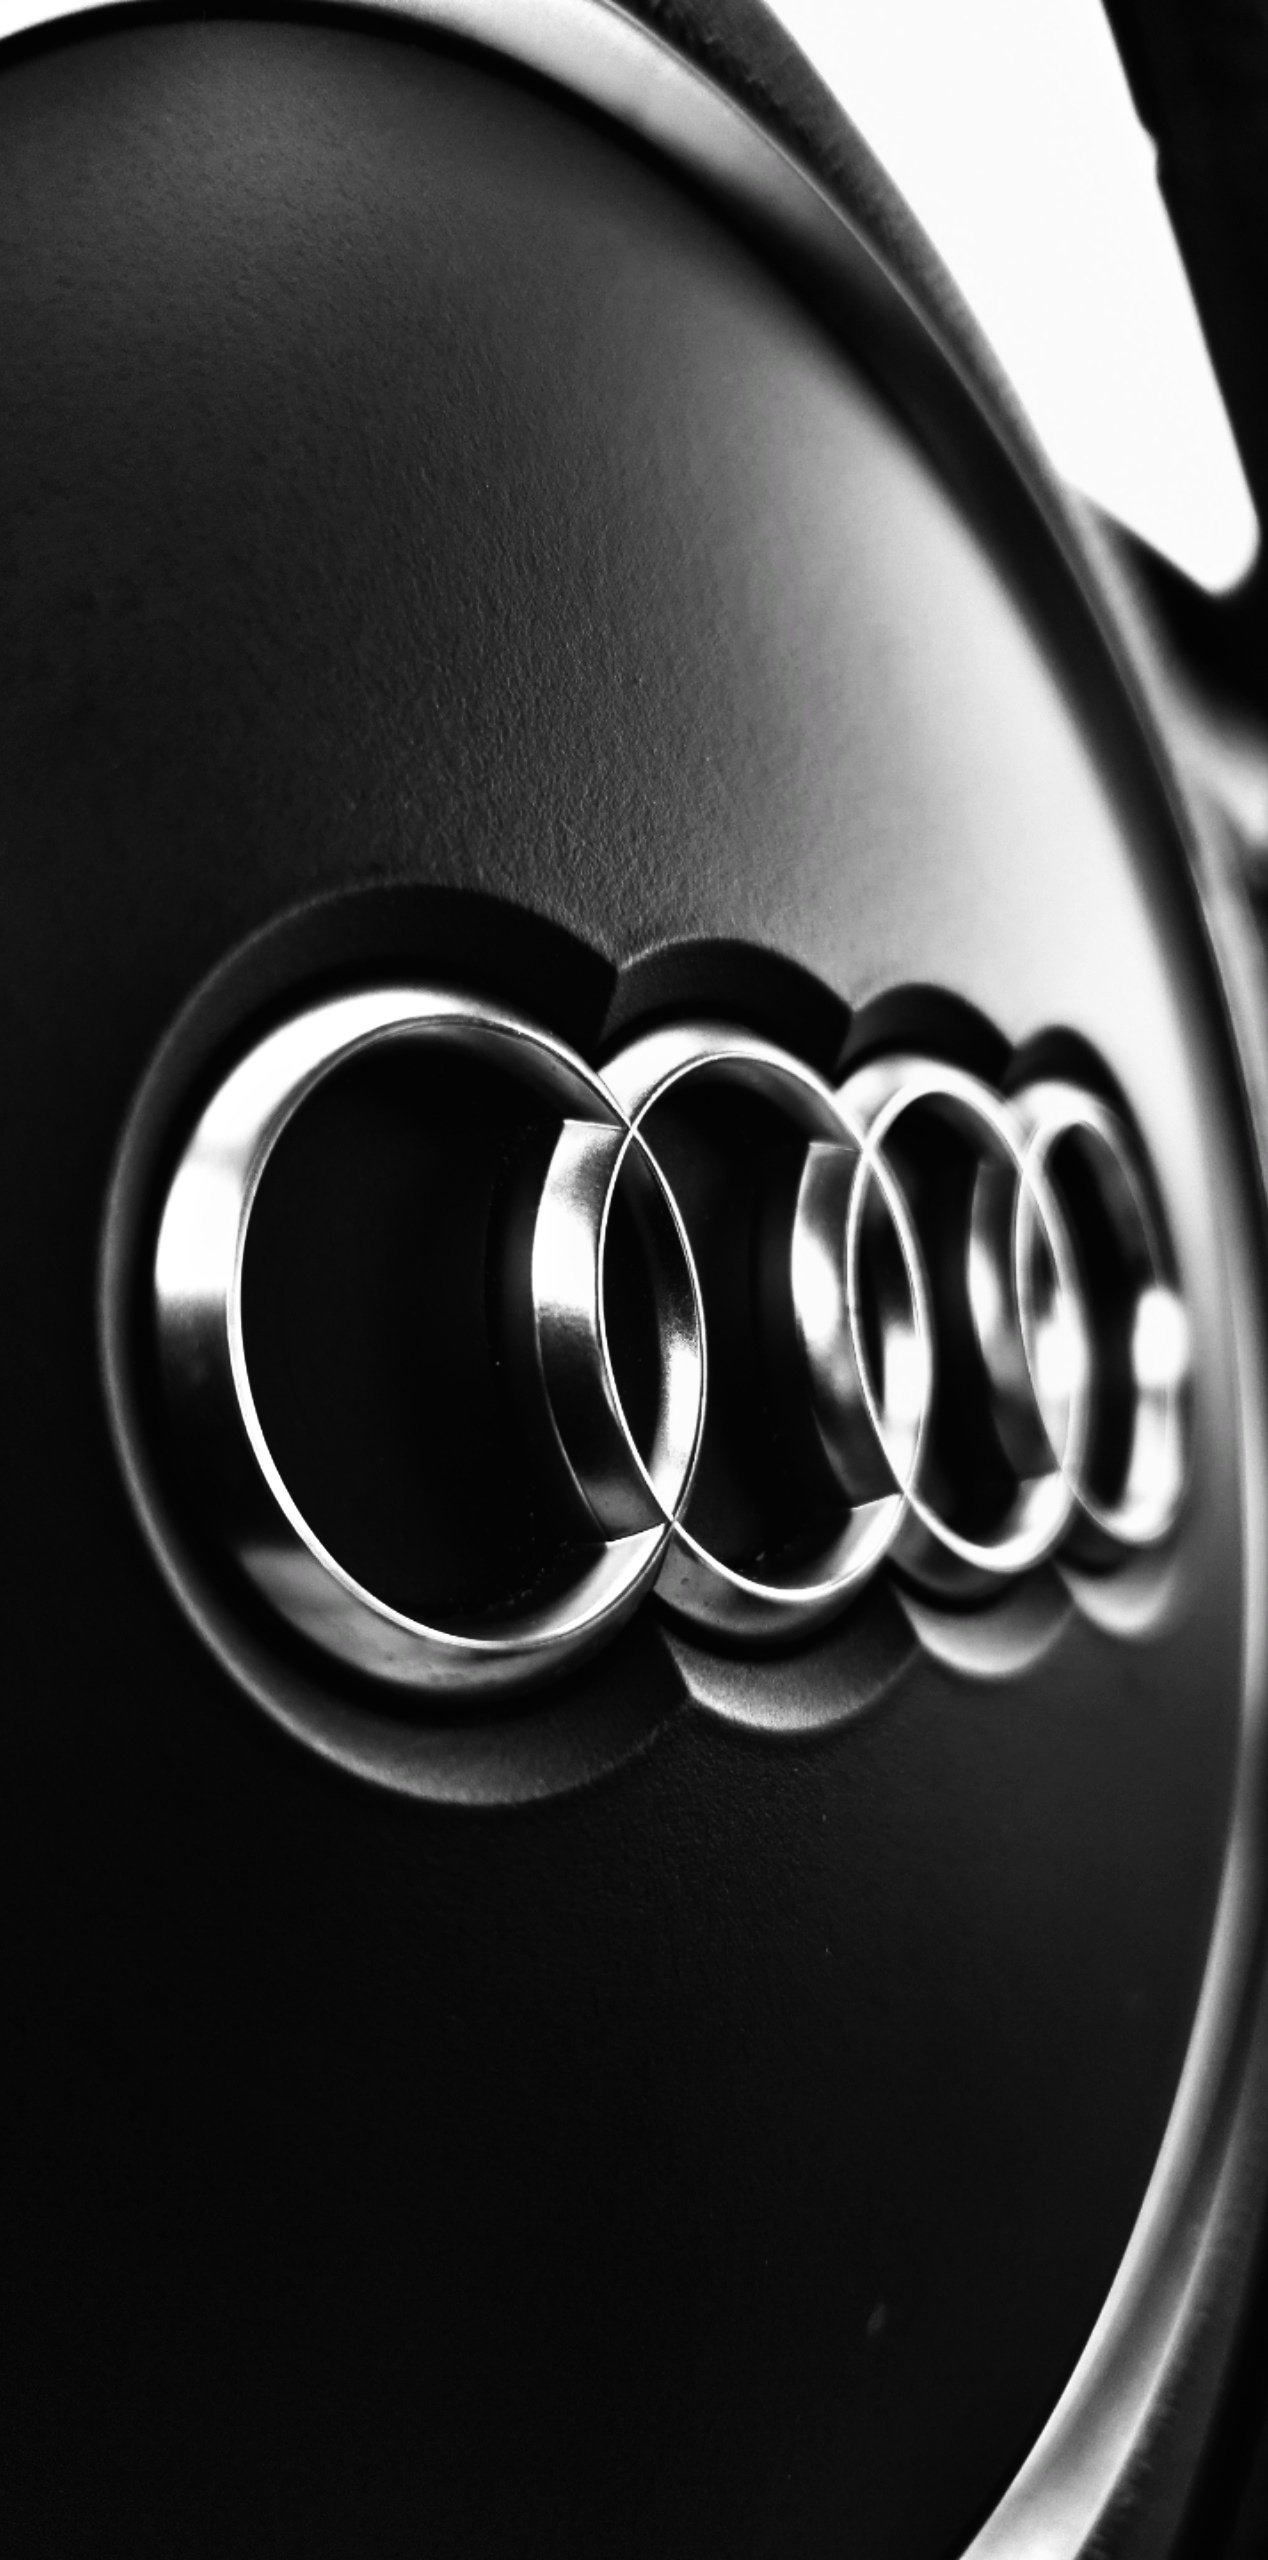 Audi Car Logo Wallpaper Download